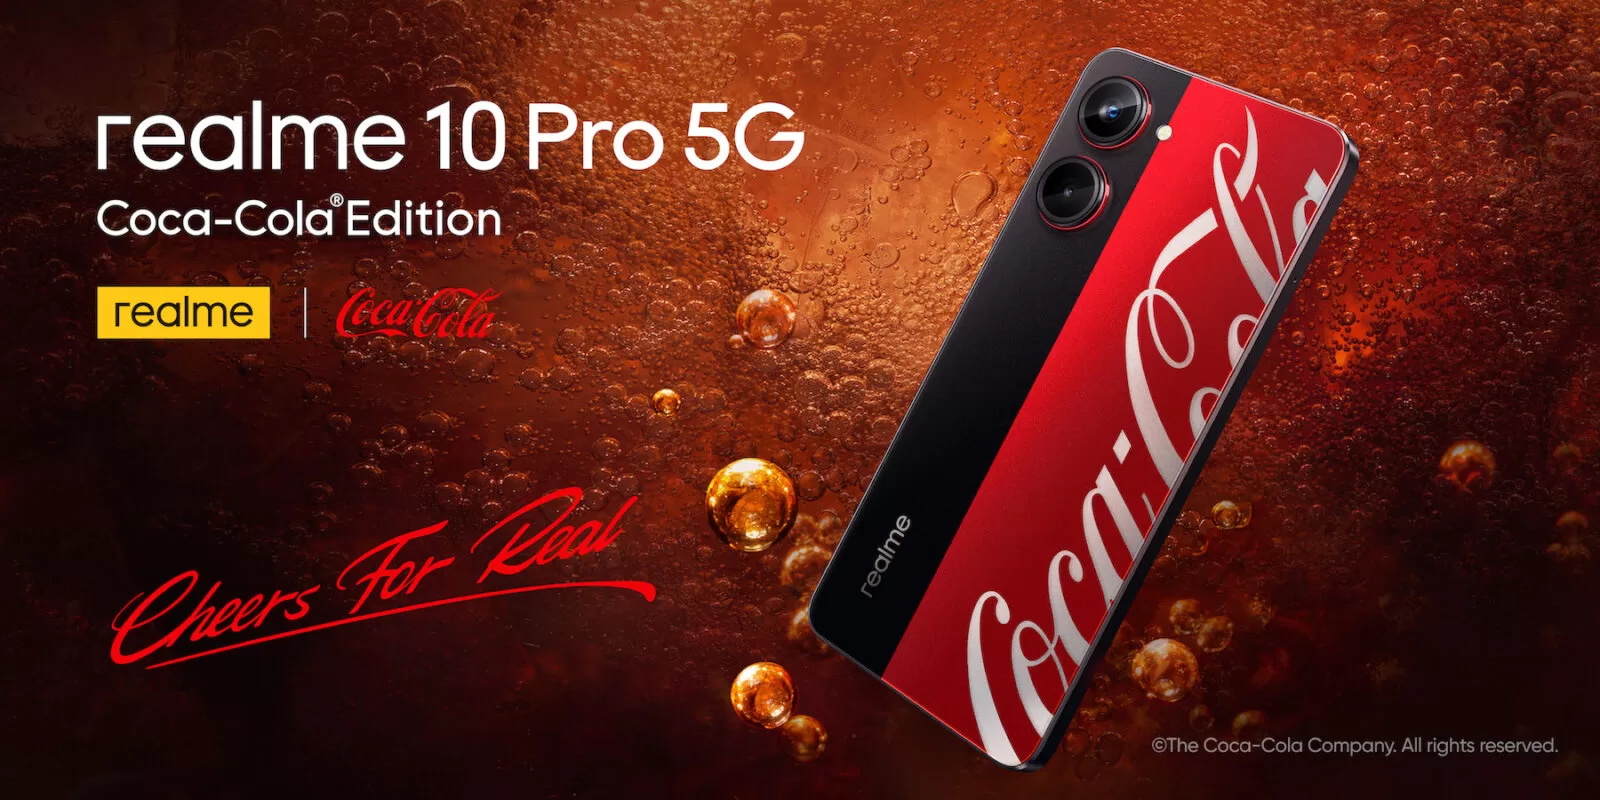 1เปิดตัว realme 10 Pro 5G Coca Cola Edition | Coca-Cola Edition | รวมข้อมูล realme 10 Pro 5G Coca-Cola Edition รุ่นพิเศษสายโค๊ก เปิดราคา 11,999 บาท